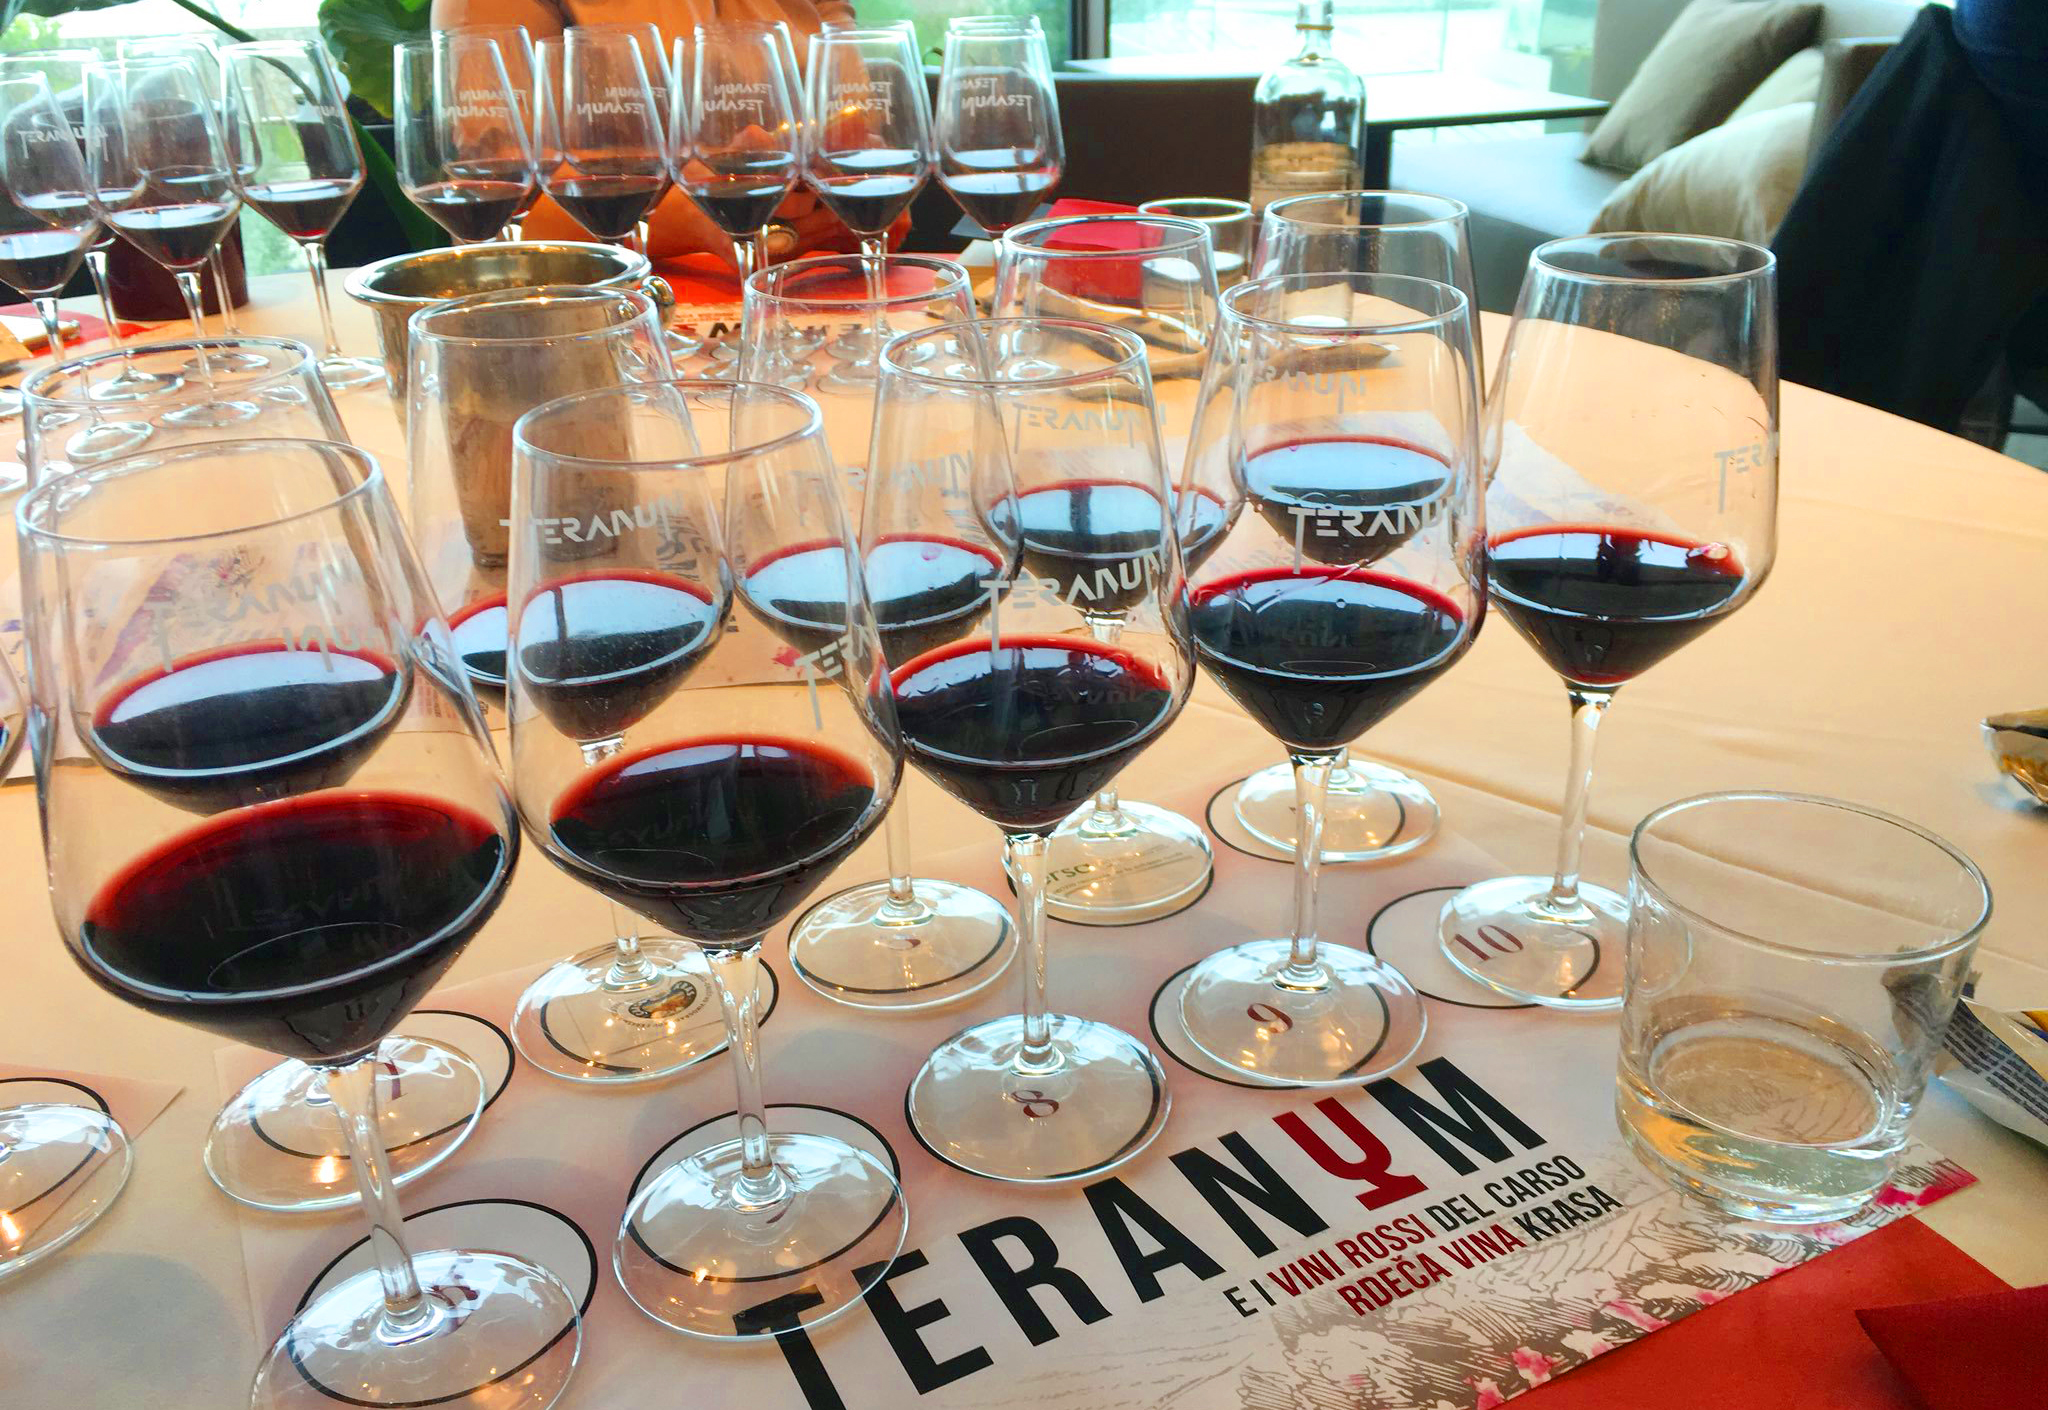 Momento di degustazione dei vini a Teranum